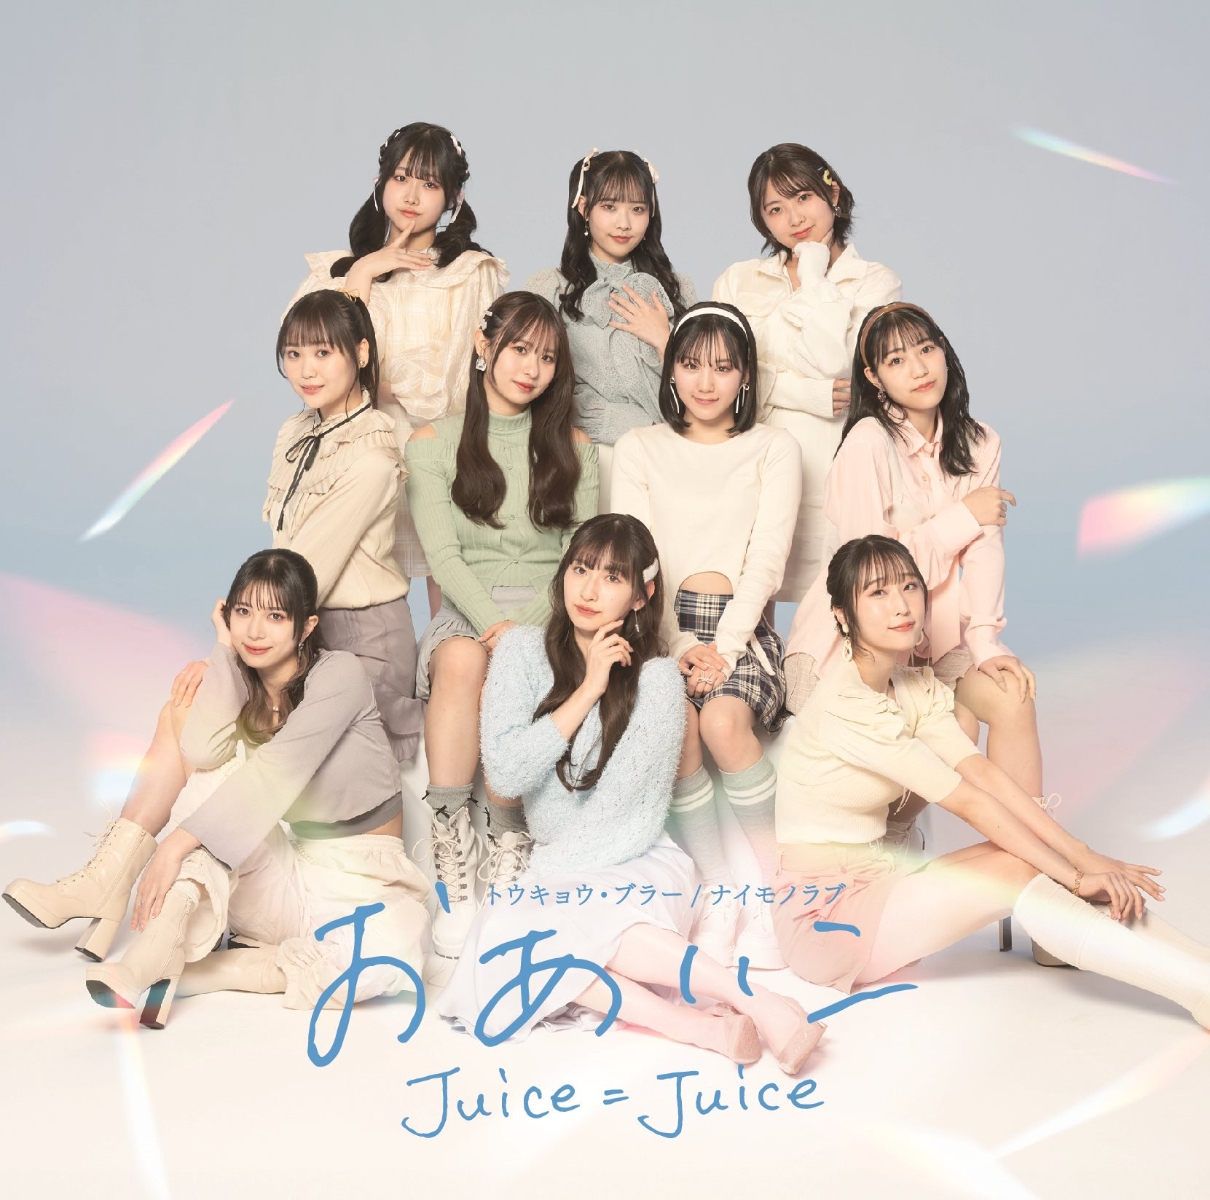 Juice=Juice — Oaiko cover artwork